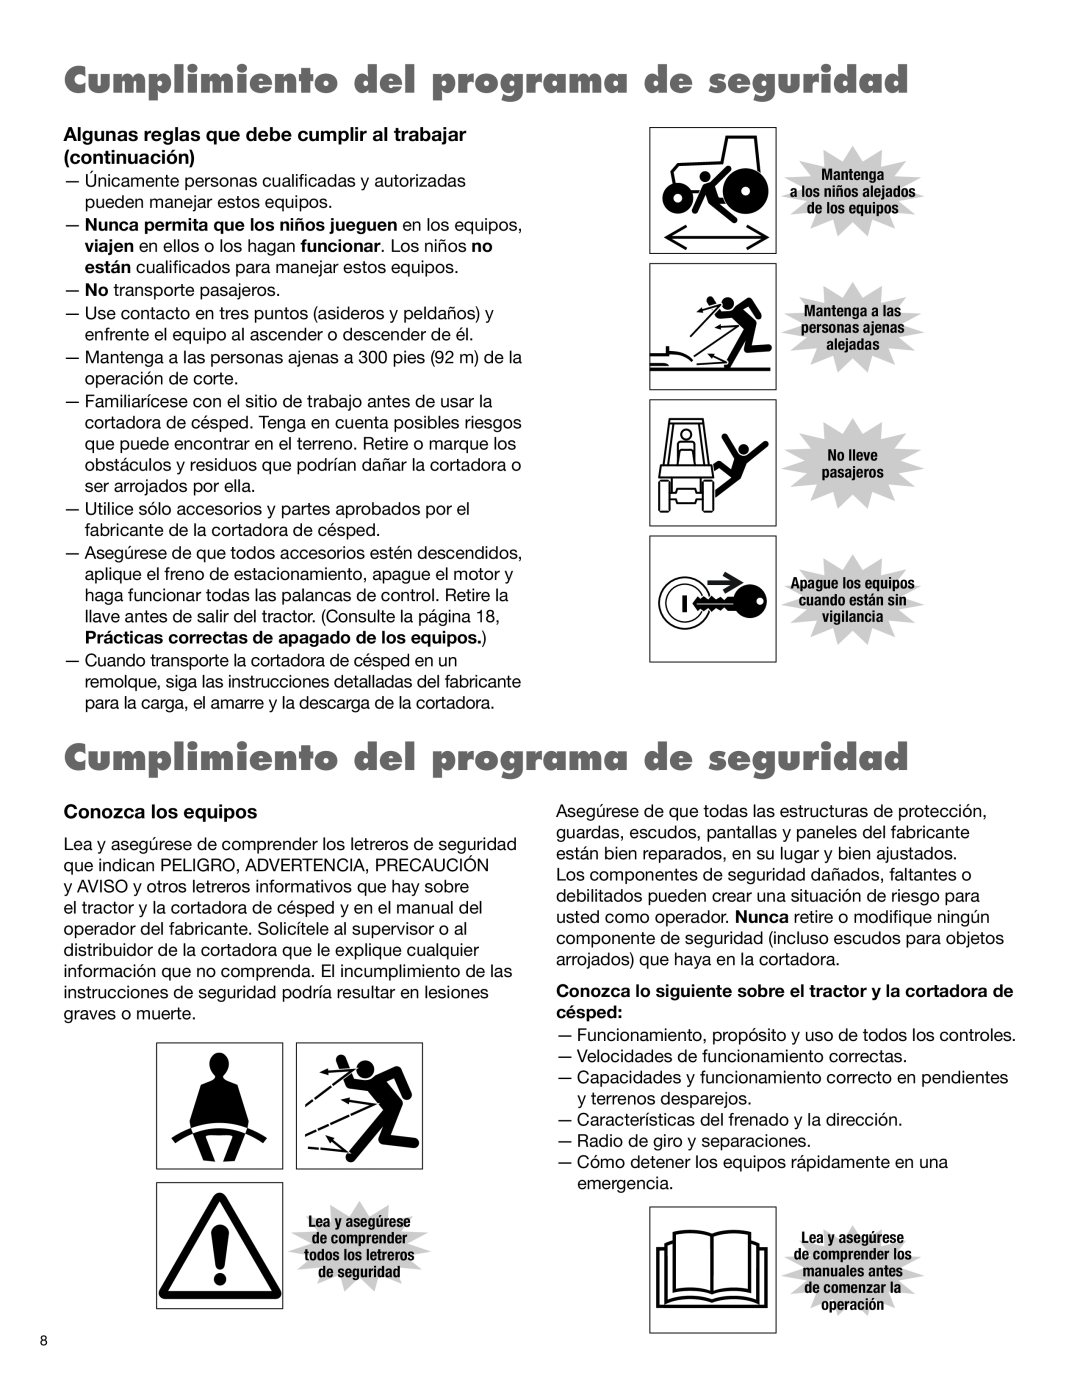 Alamo 1900 manual Cumplimiento del programa de seguridad, Conozca los equipos 